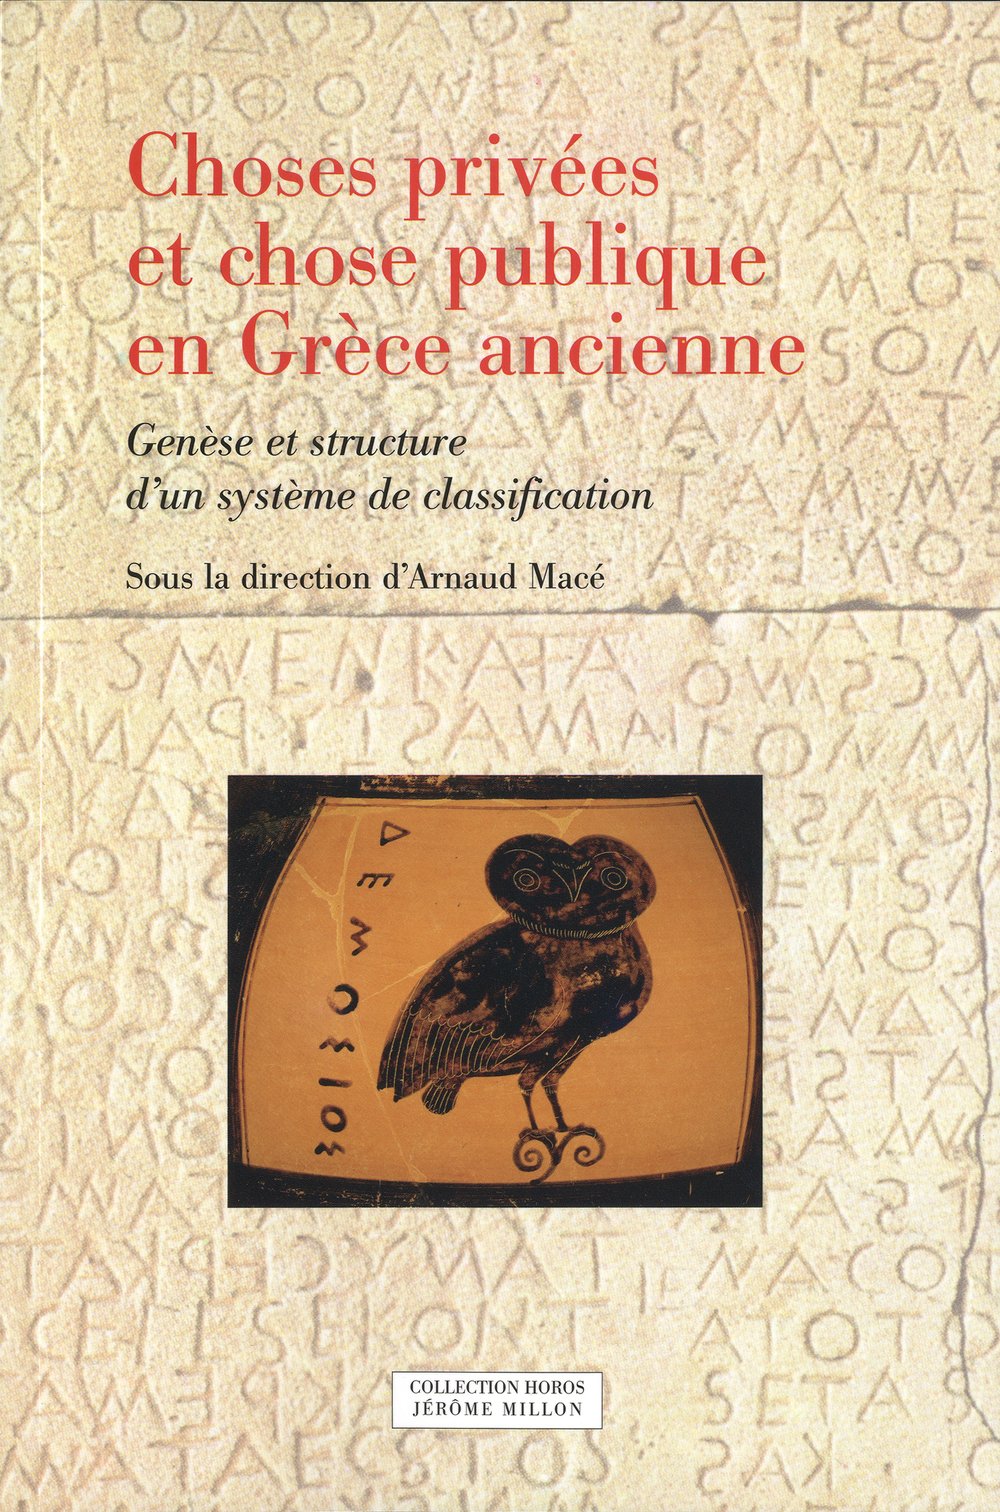 Choses privées et chose publique en Grèce ancienne. Genèse et structure d'un système de classification, 2012, 352 p.